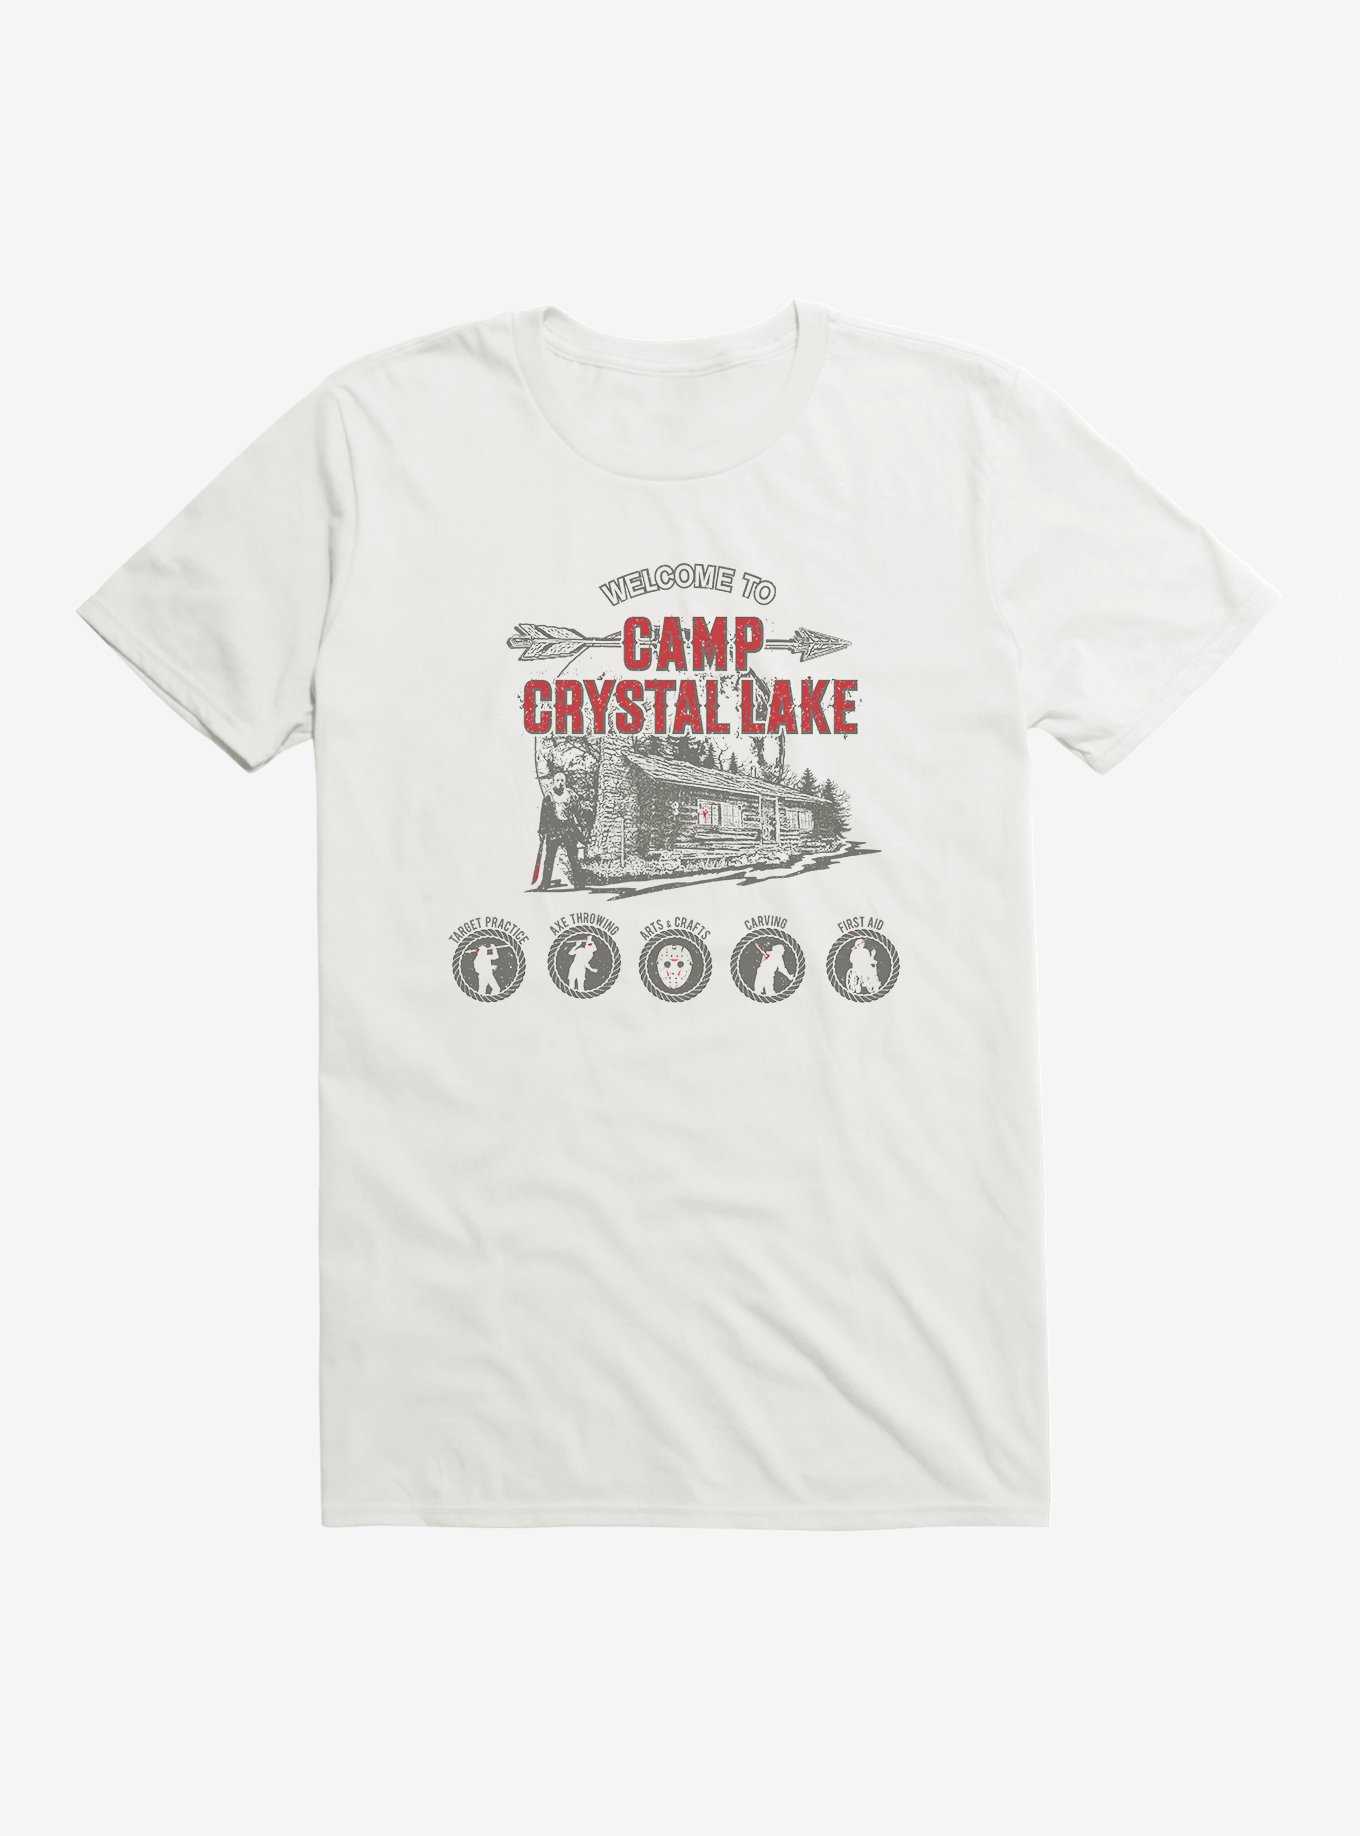 Friday The 13th Crystal Lake Camp T-Shirt, , hi-res